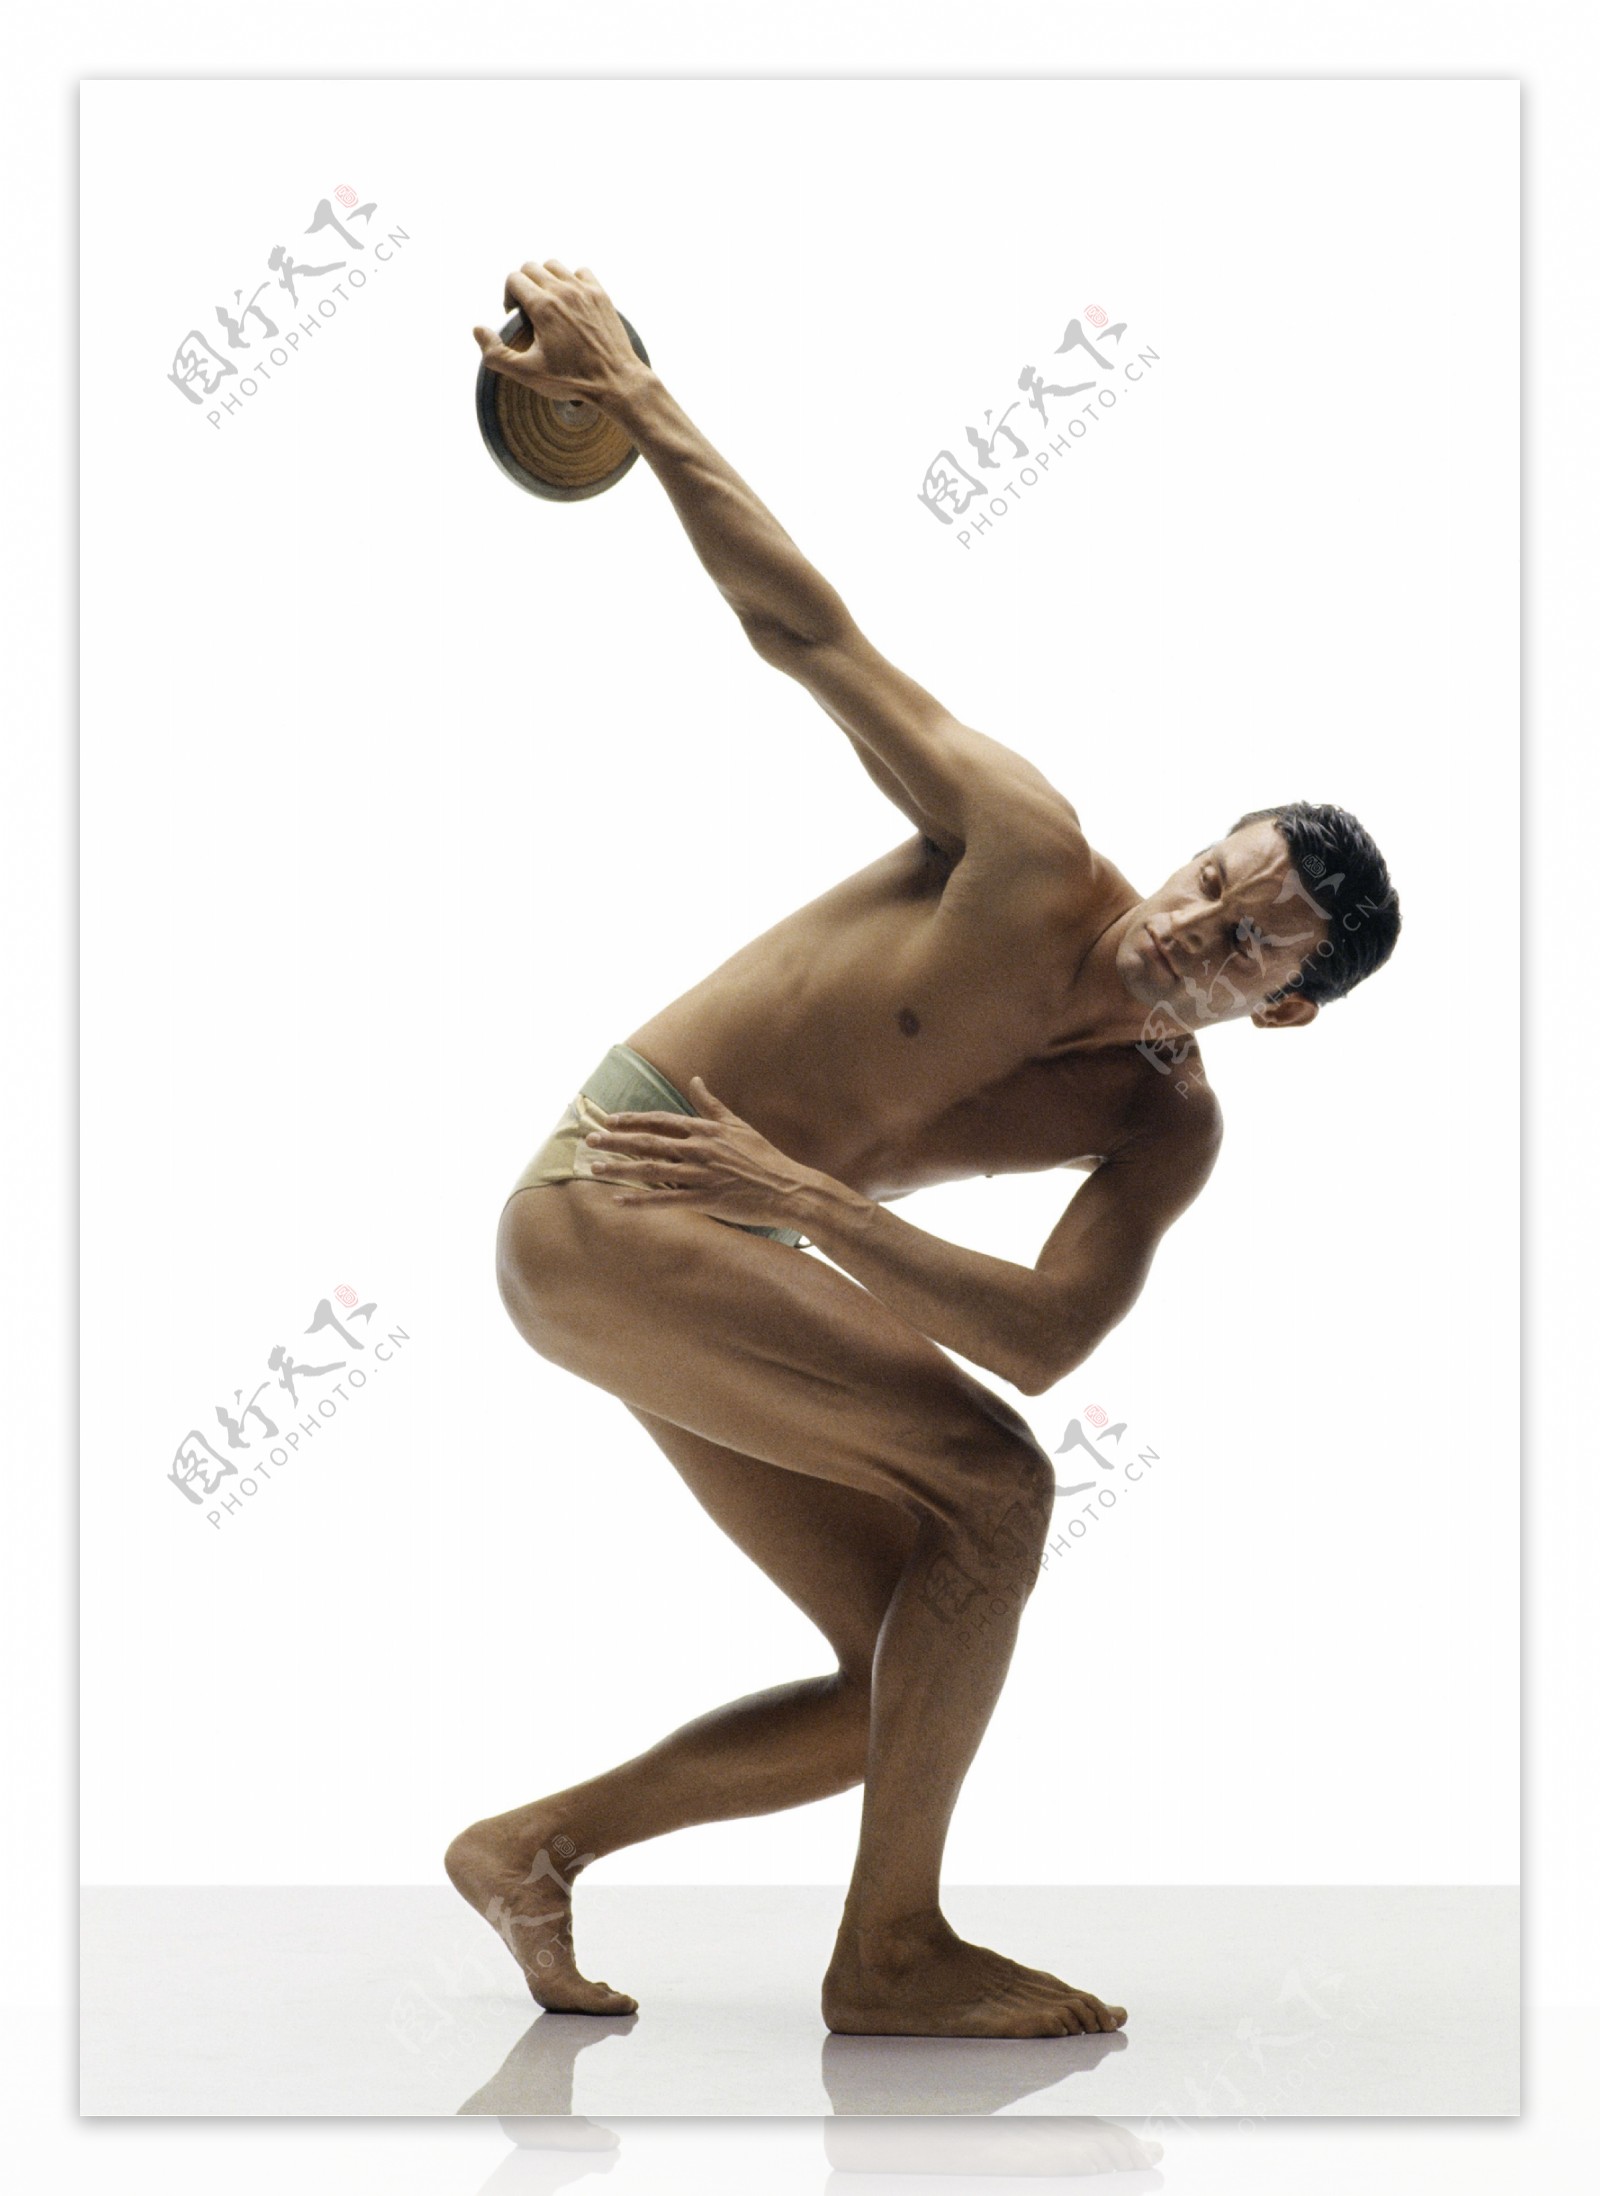 掷铁饼的外国男性运动员图片